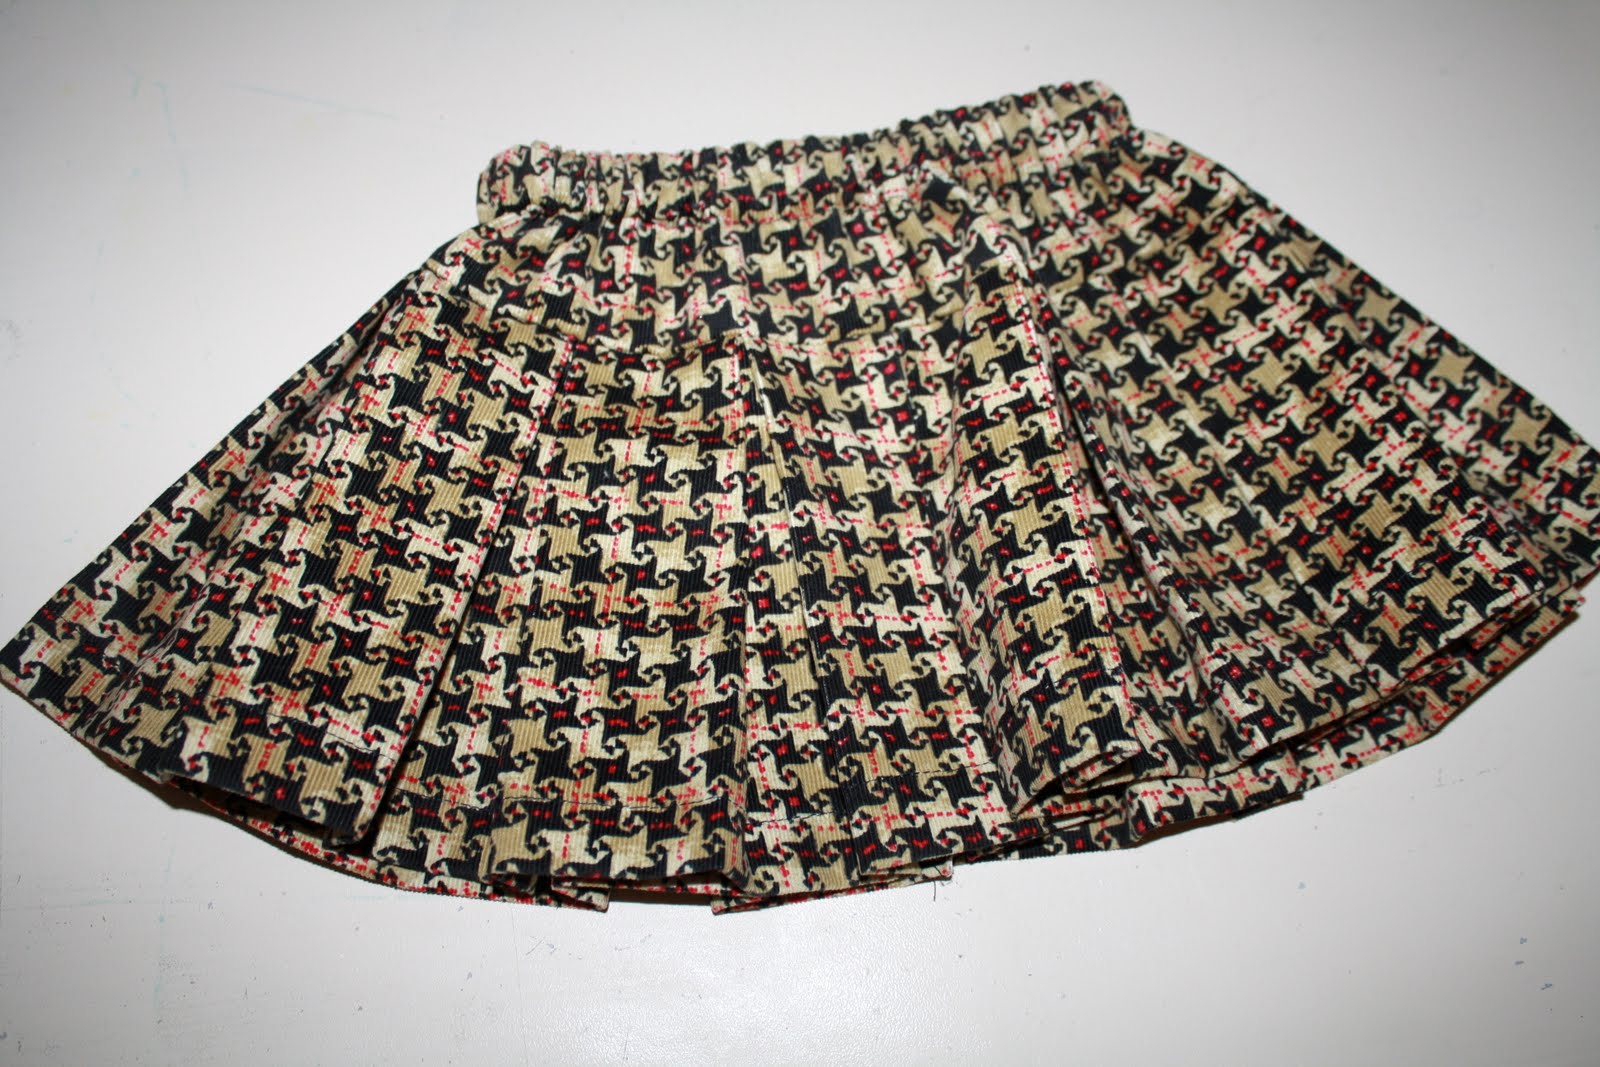 Sweet Pea and Pumkins: Pleated skirt